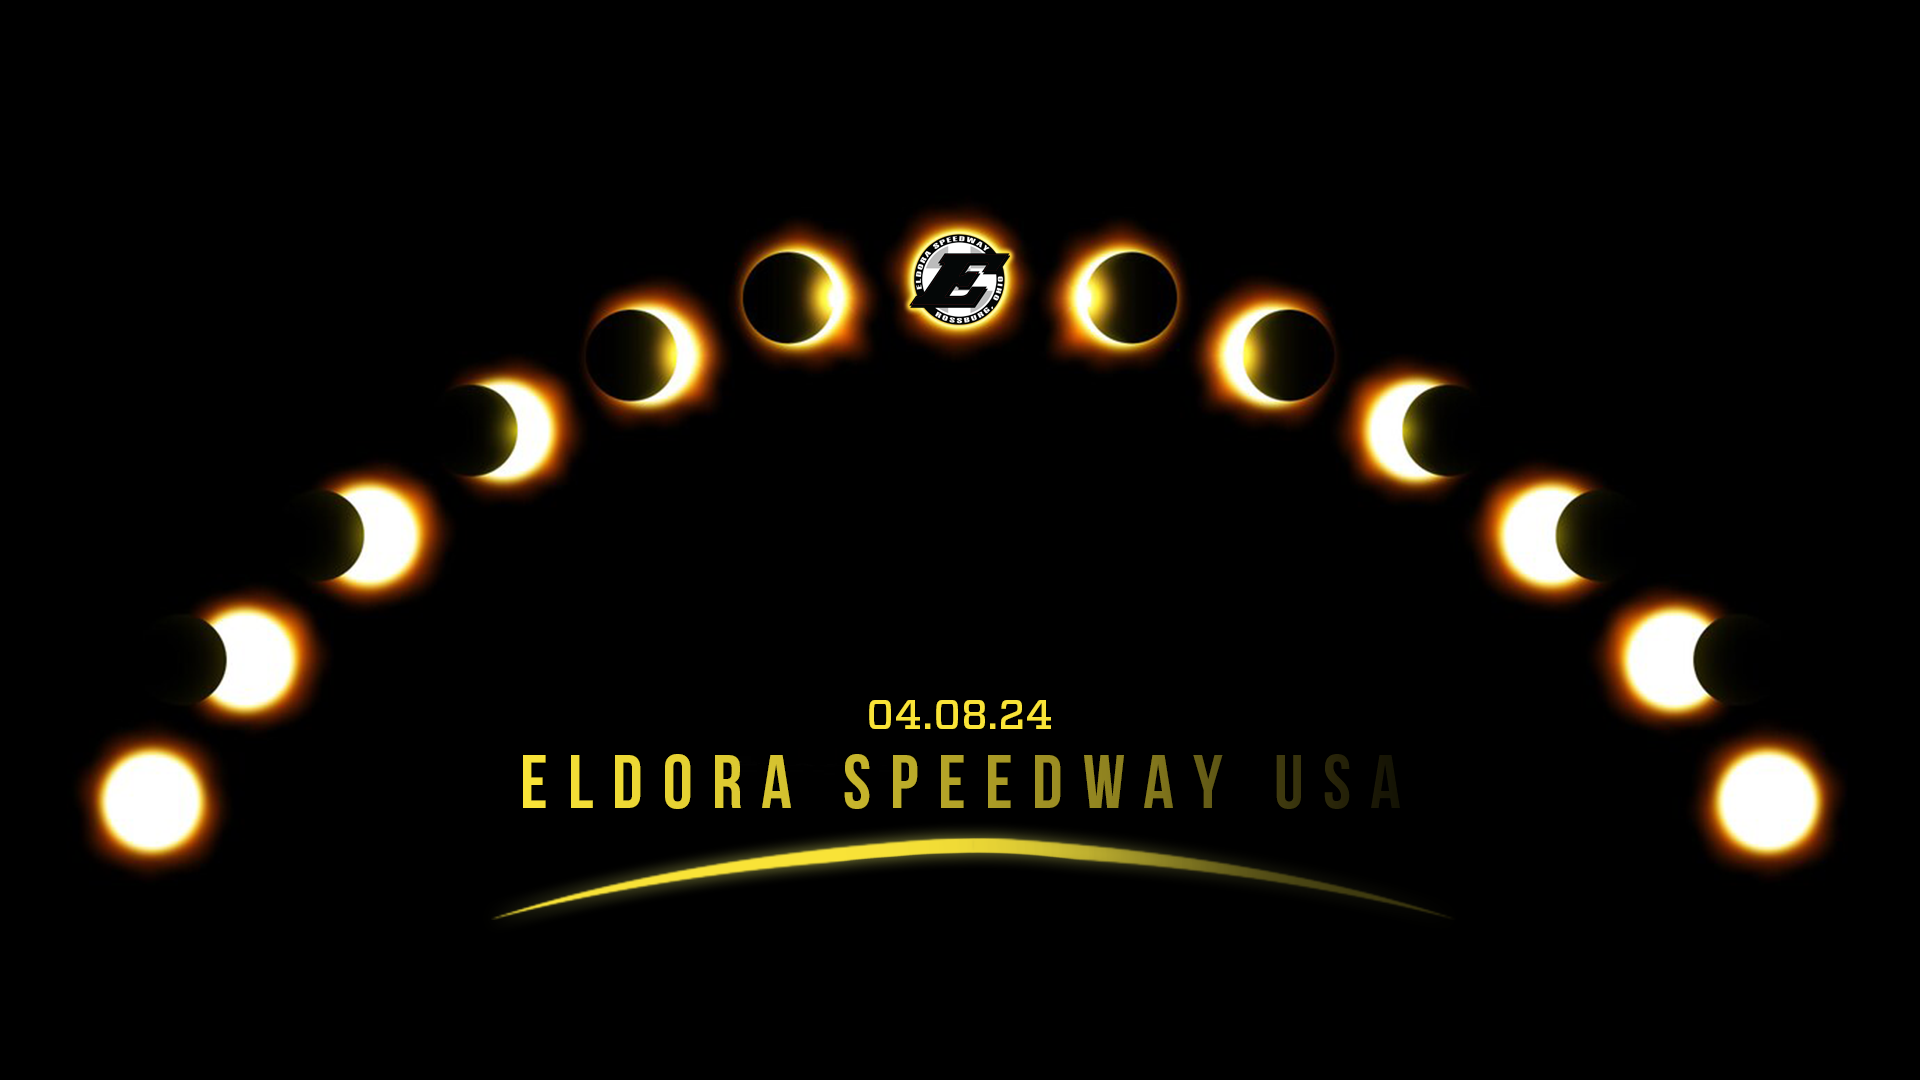 Solar Eclipse 2024 Eldora Speedway